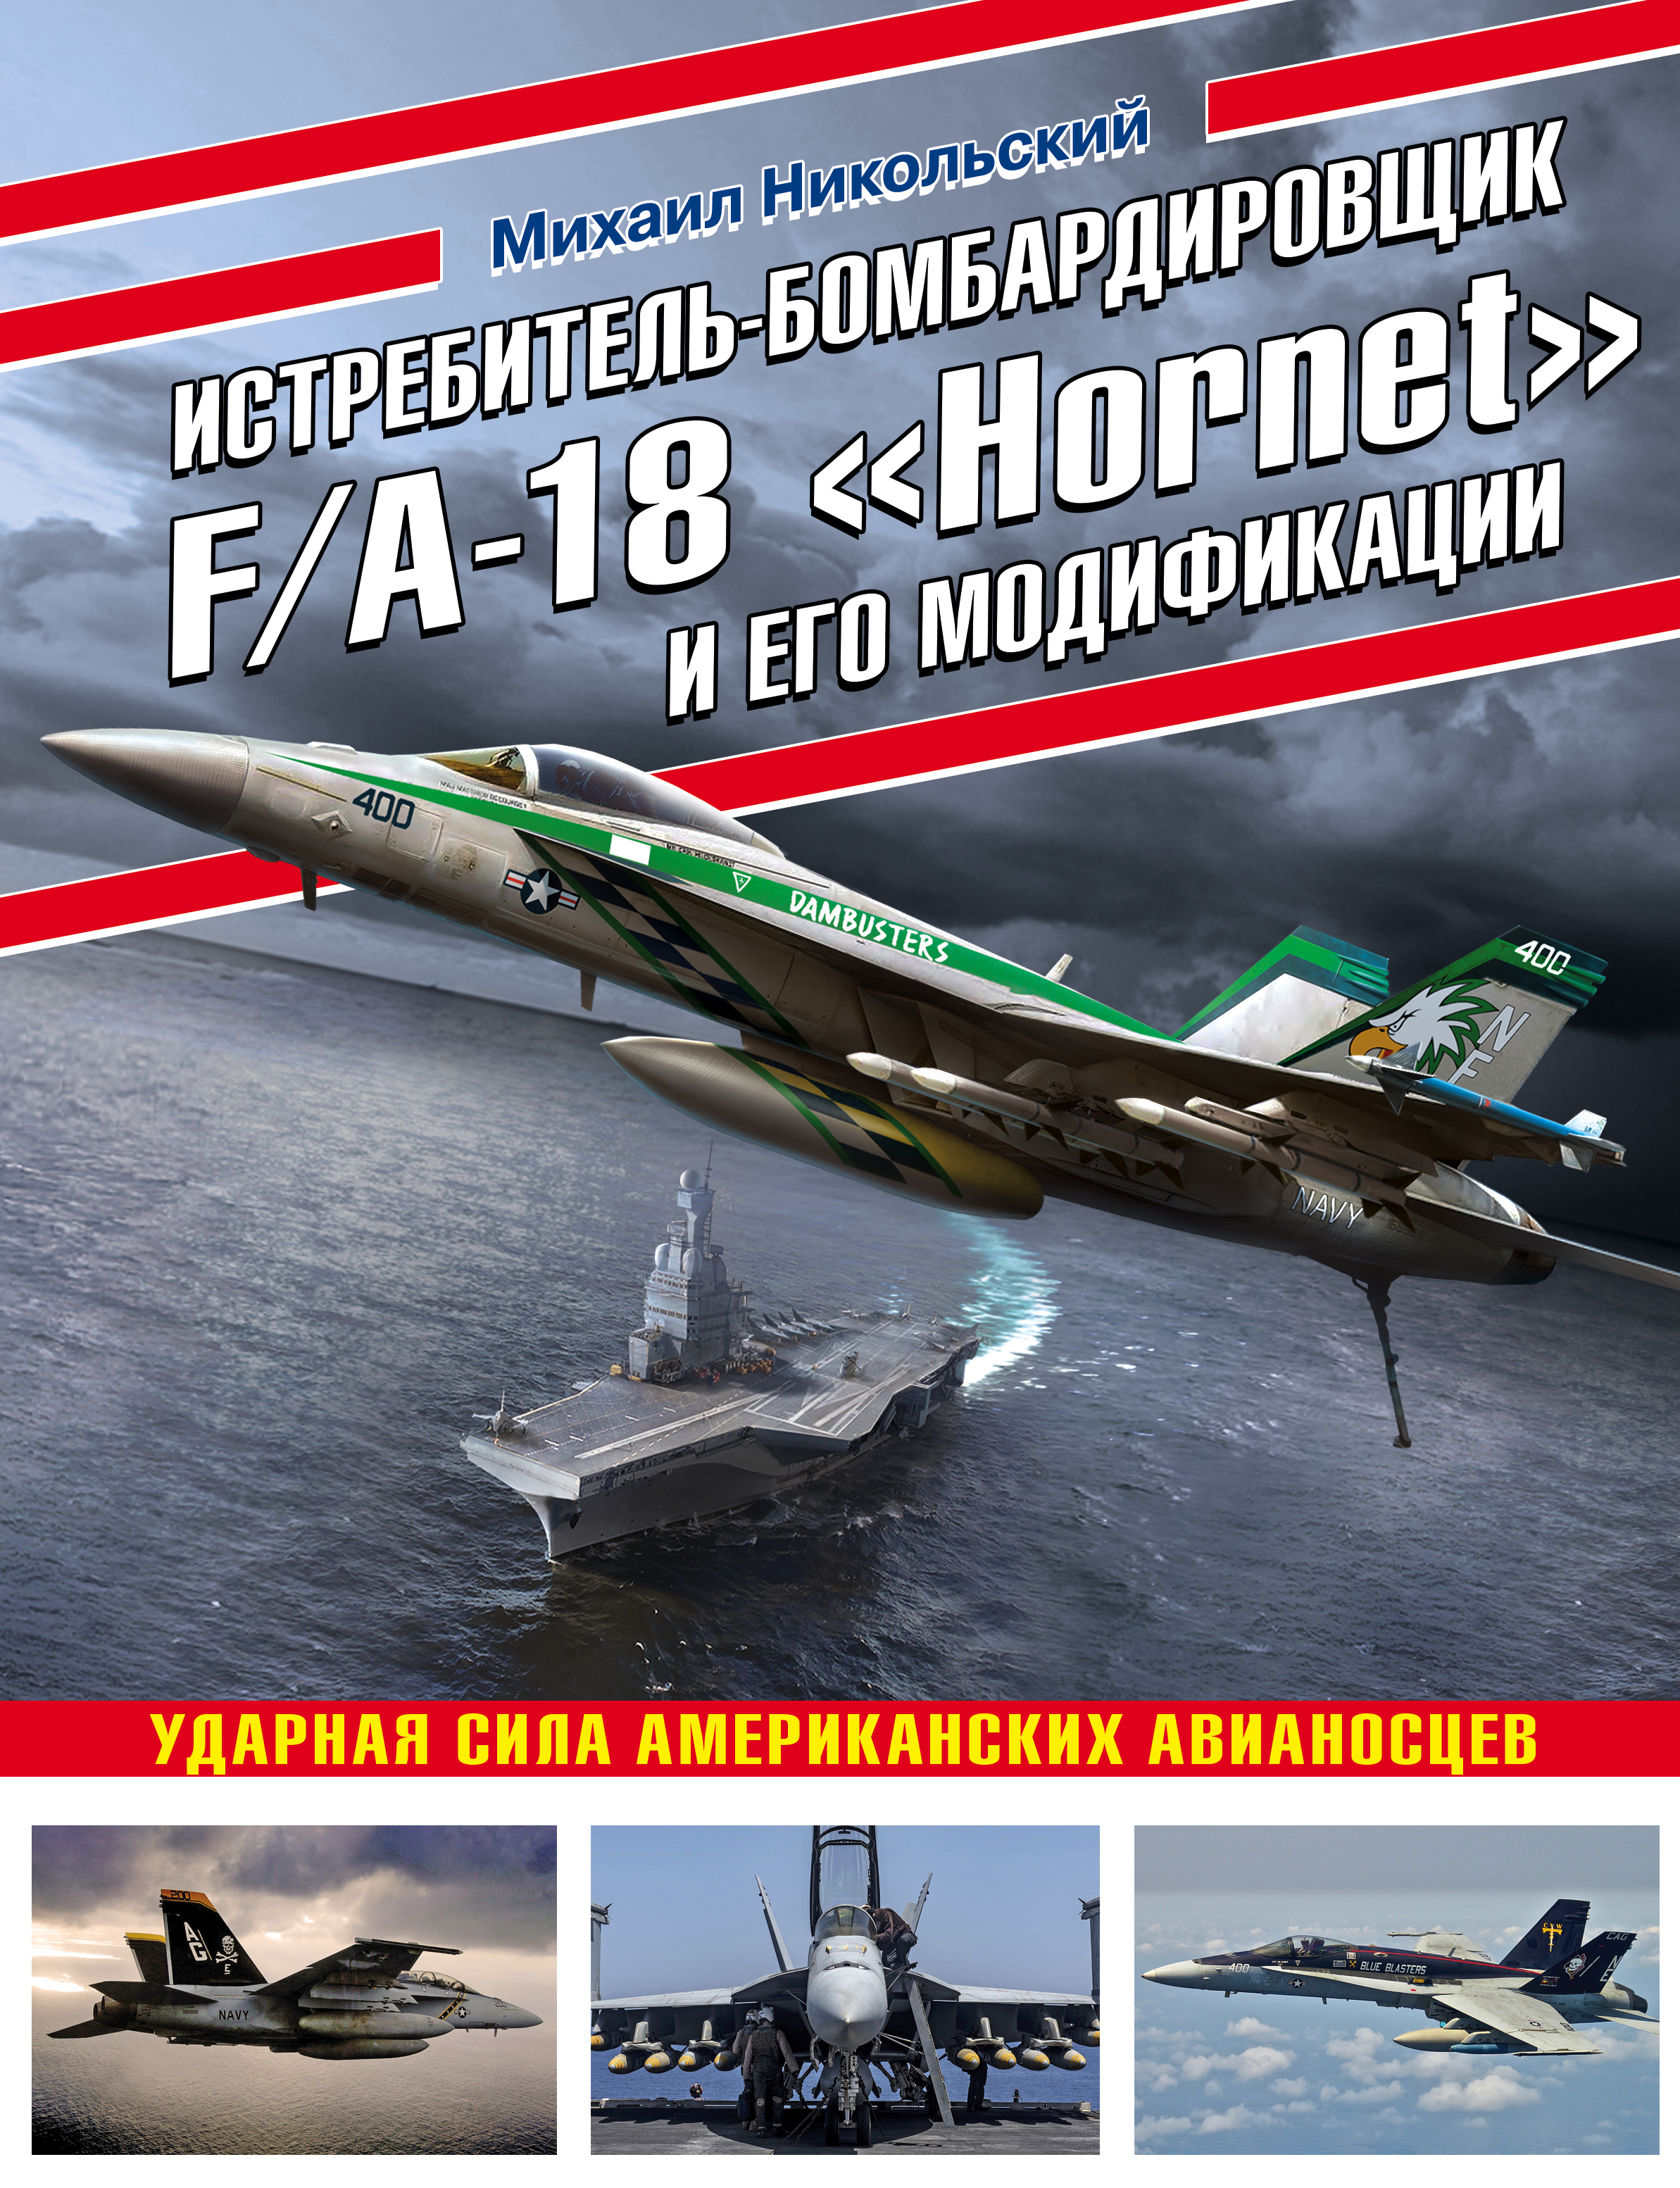  .. - F/A-18 Hornet   :     